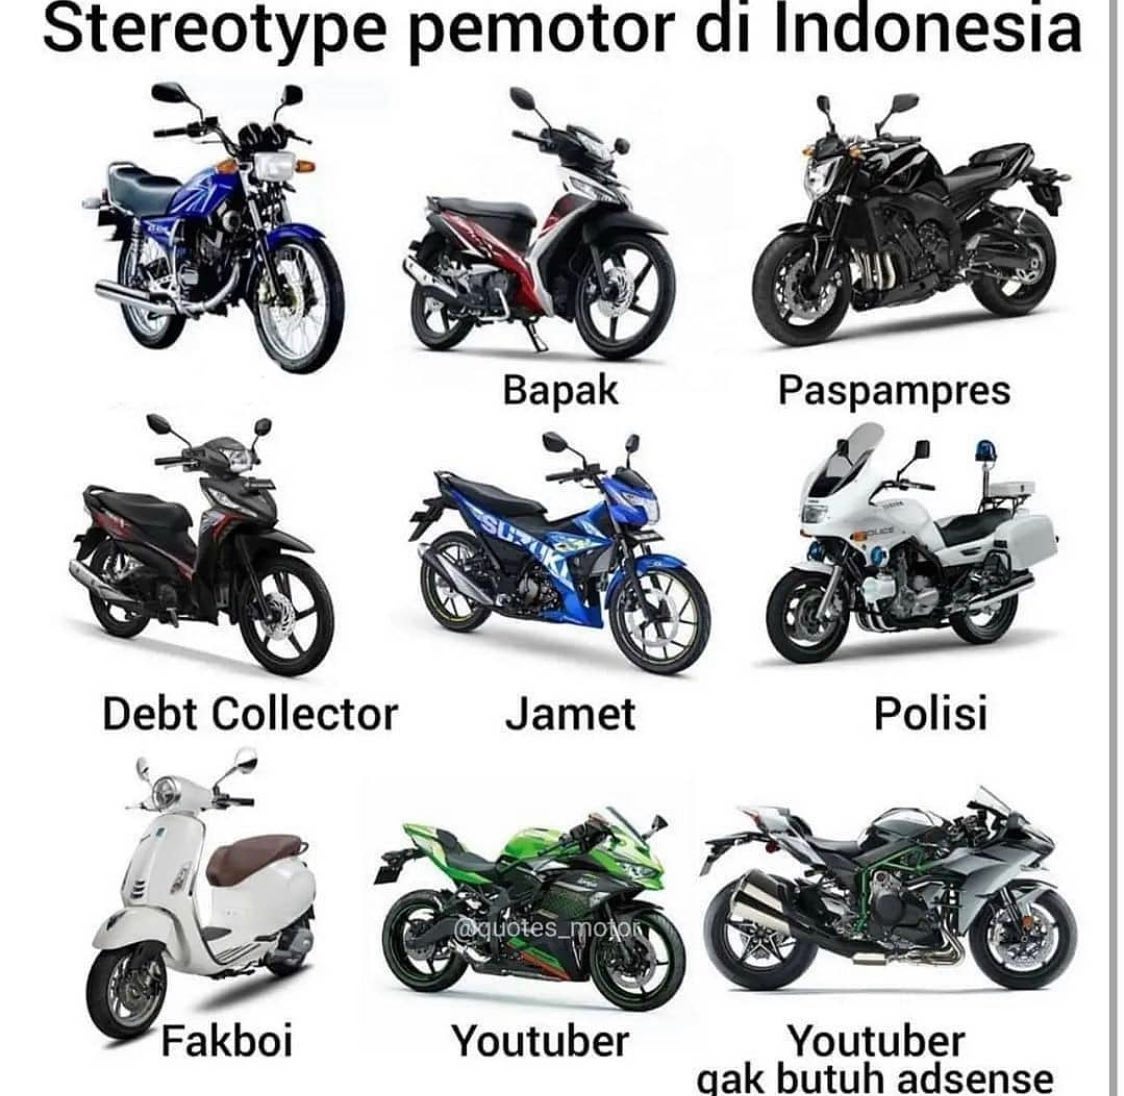 Stereotype pemotor di Indonesia
Siapa yang setuju? Kamu yang mana?